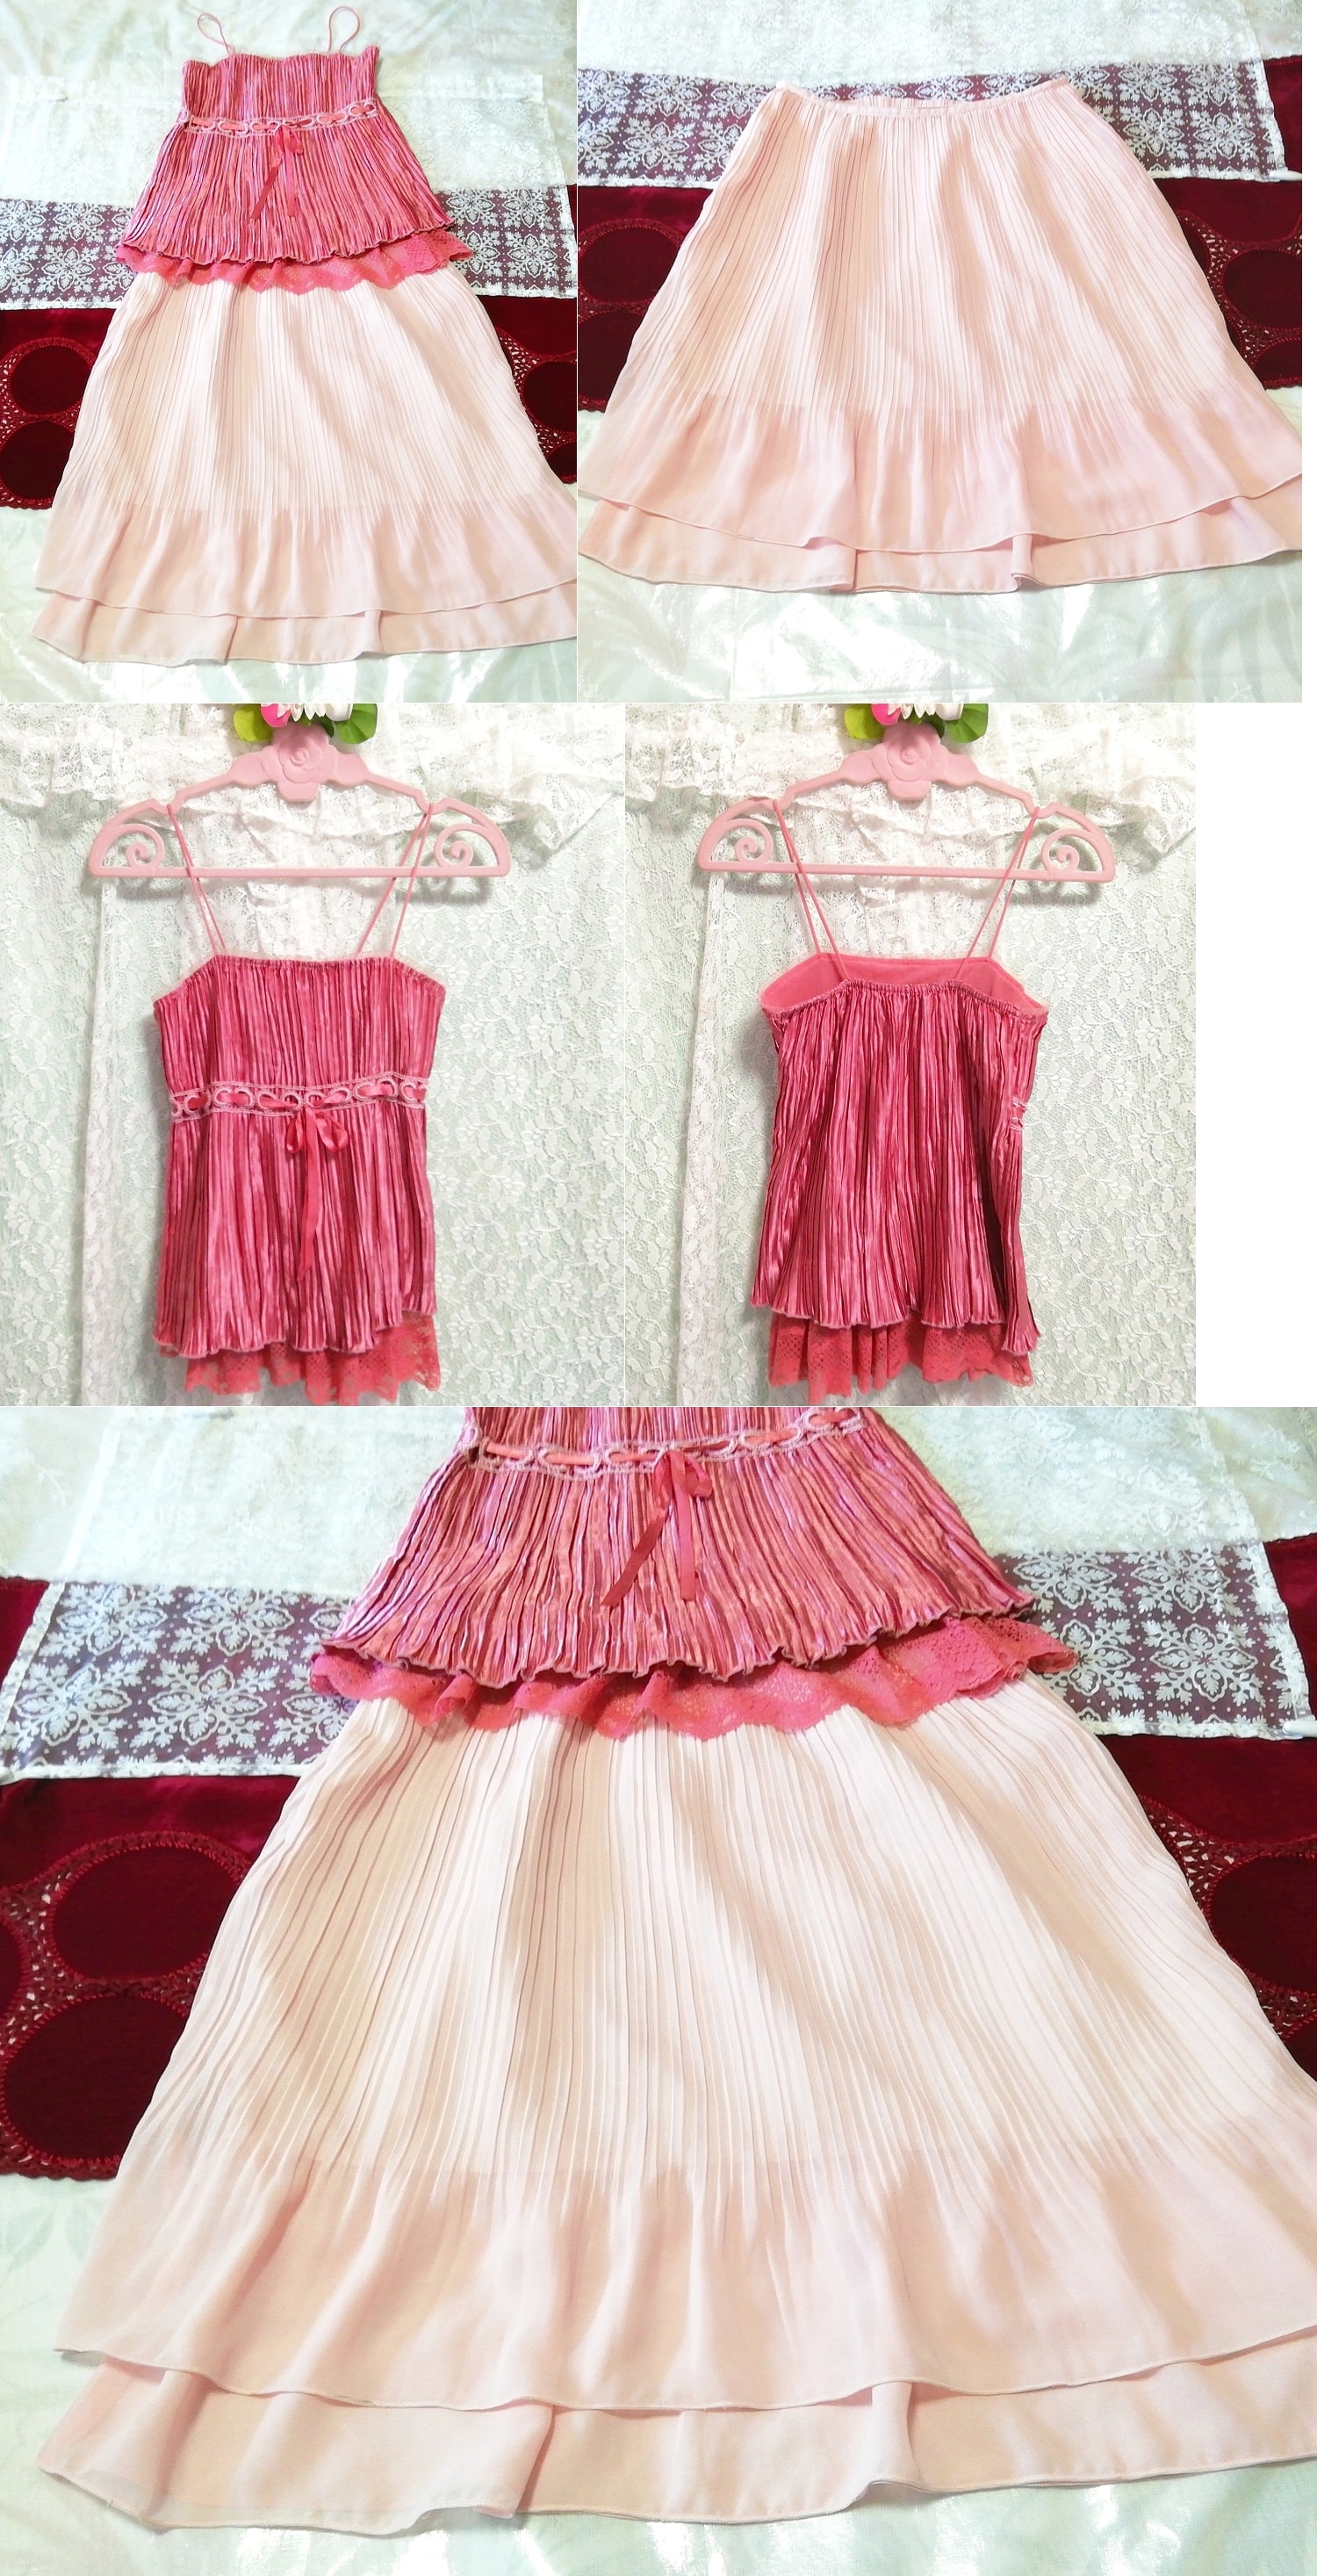 핑크 새틴 레이스 캐미솔 네글리제 나이트가운 핑크 쉬폰 플리츠 스커트 2P, 패션, 숙녀 패션, 잠옷, 잠옷